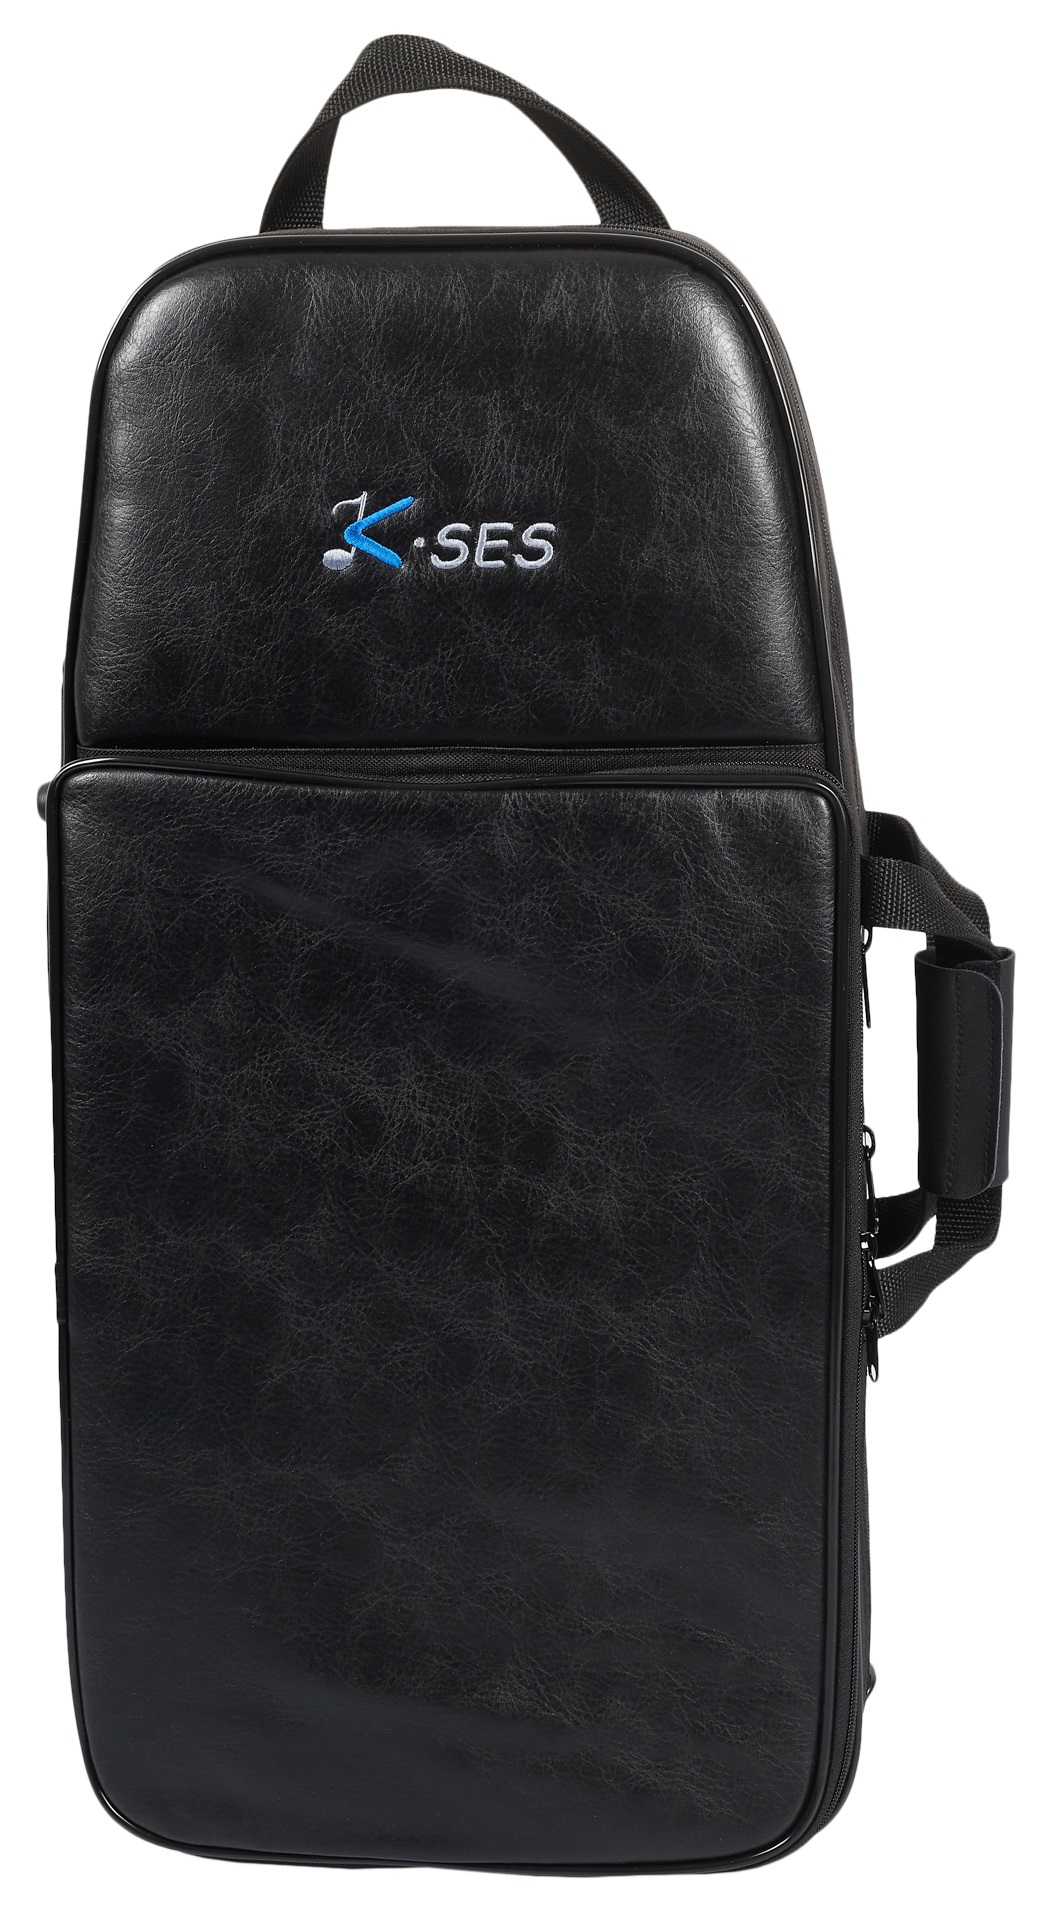 K-SES Sport, Black